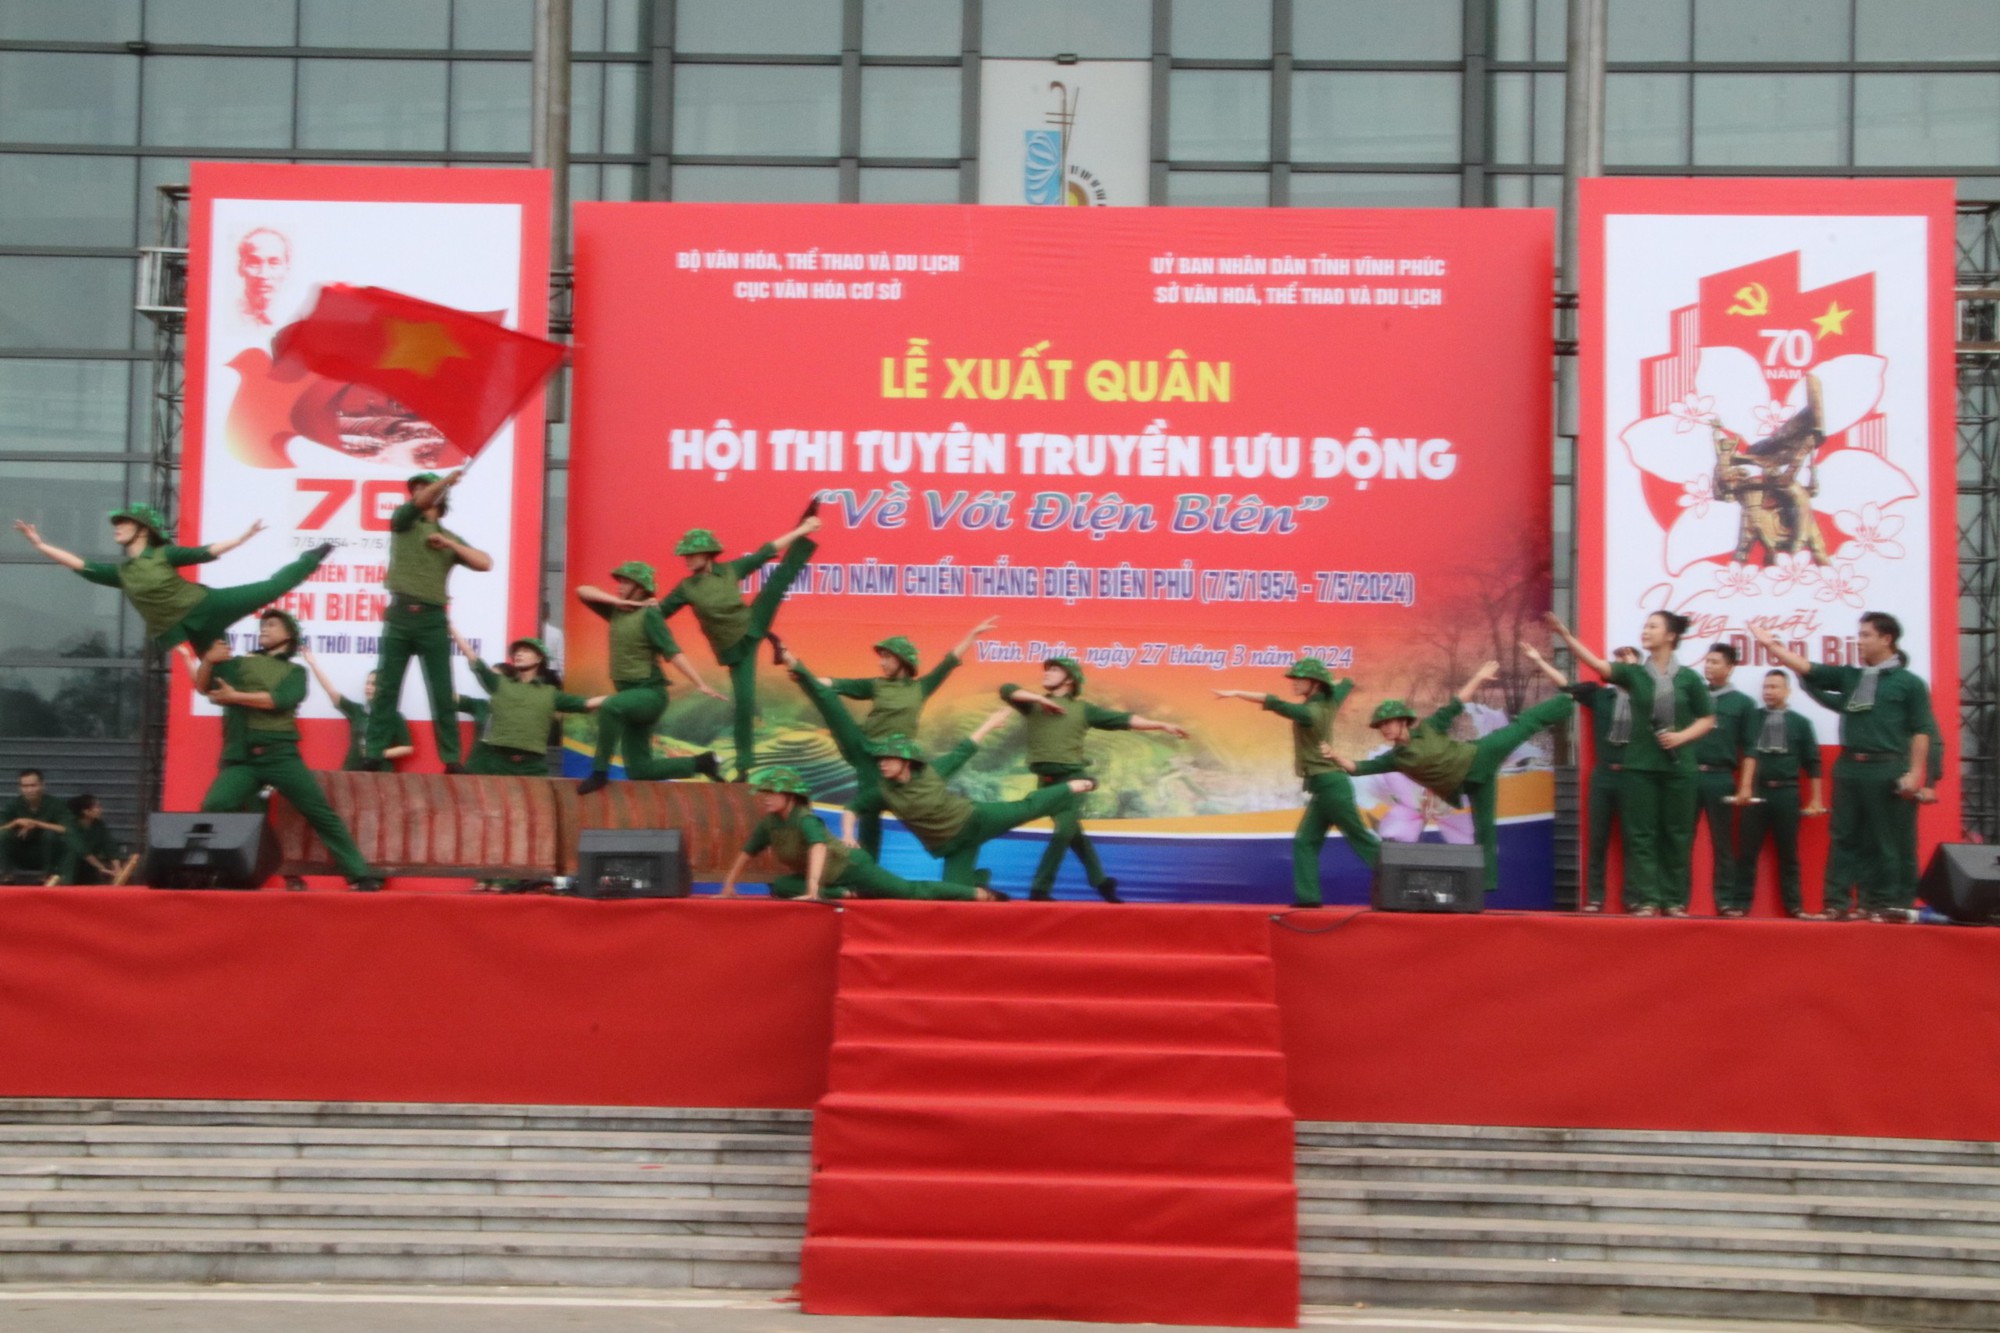 Concours de propagande mobile célébrant le 70ème anniversaire de la Victoire de Dien Bien Phu (7 mai 5 - 1954 mai 7) - Photo 5.